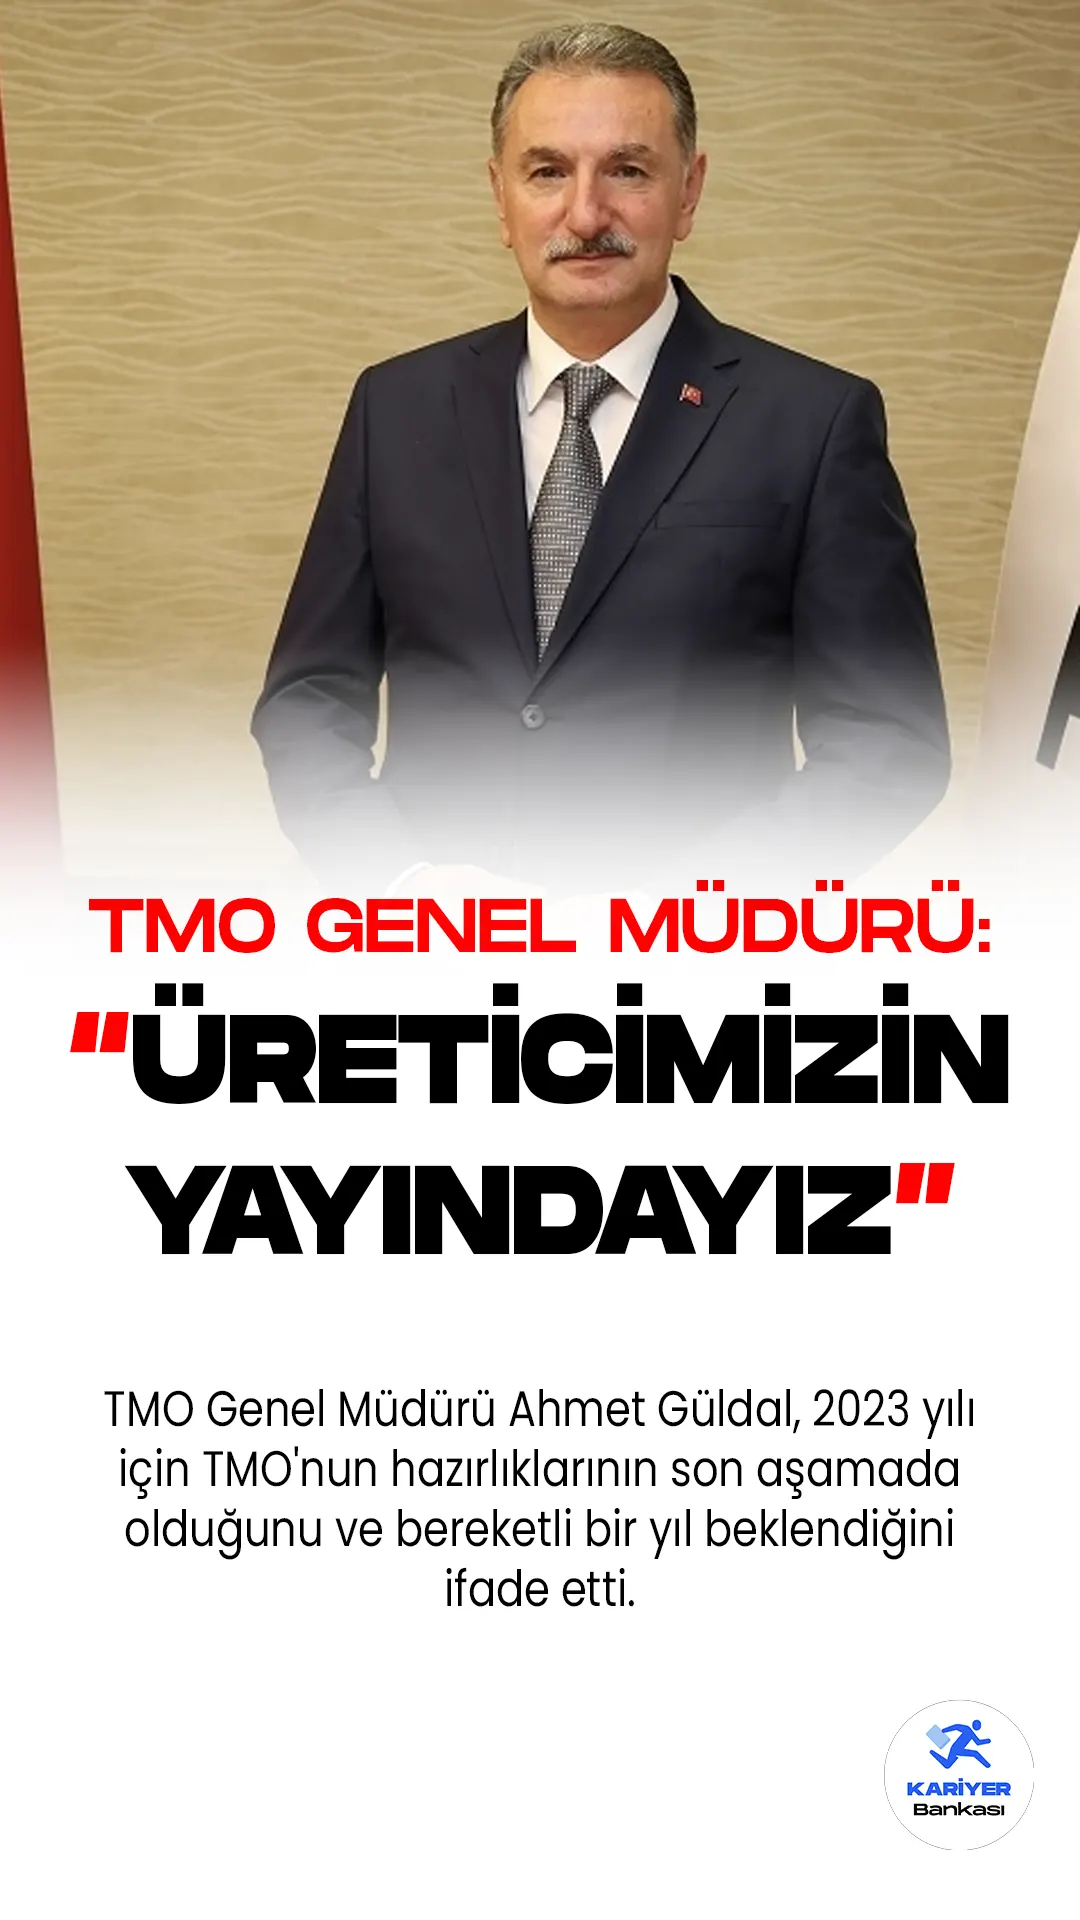 TMO Genel Müdürü Ahmet Güldal, 2023 yılı için TMO'nun hazırlıklarının son aşamada olduğunu ve bereketli bir yıl beklendiğini ifade etti.